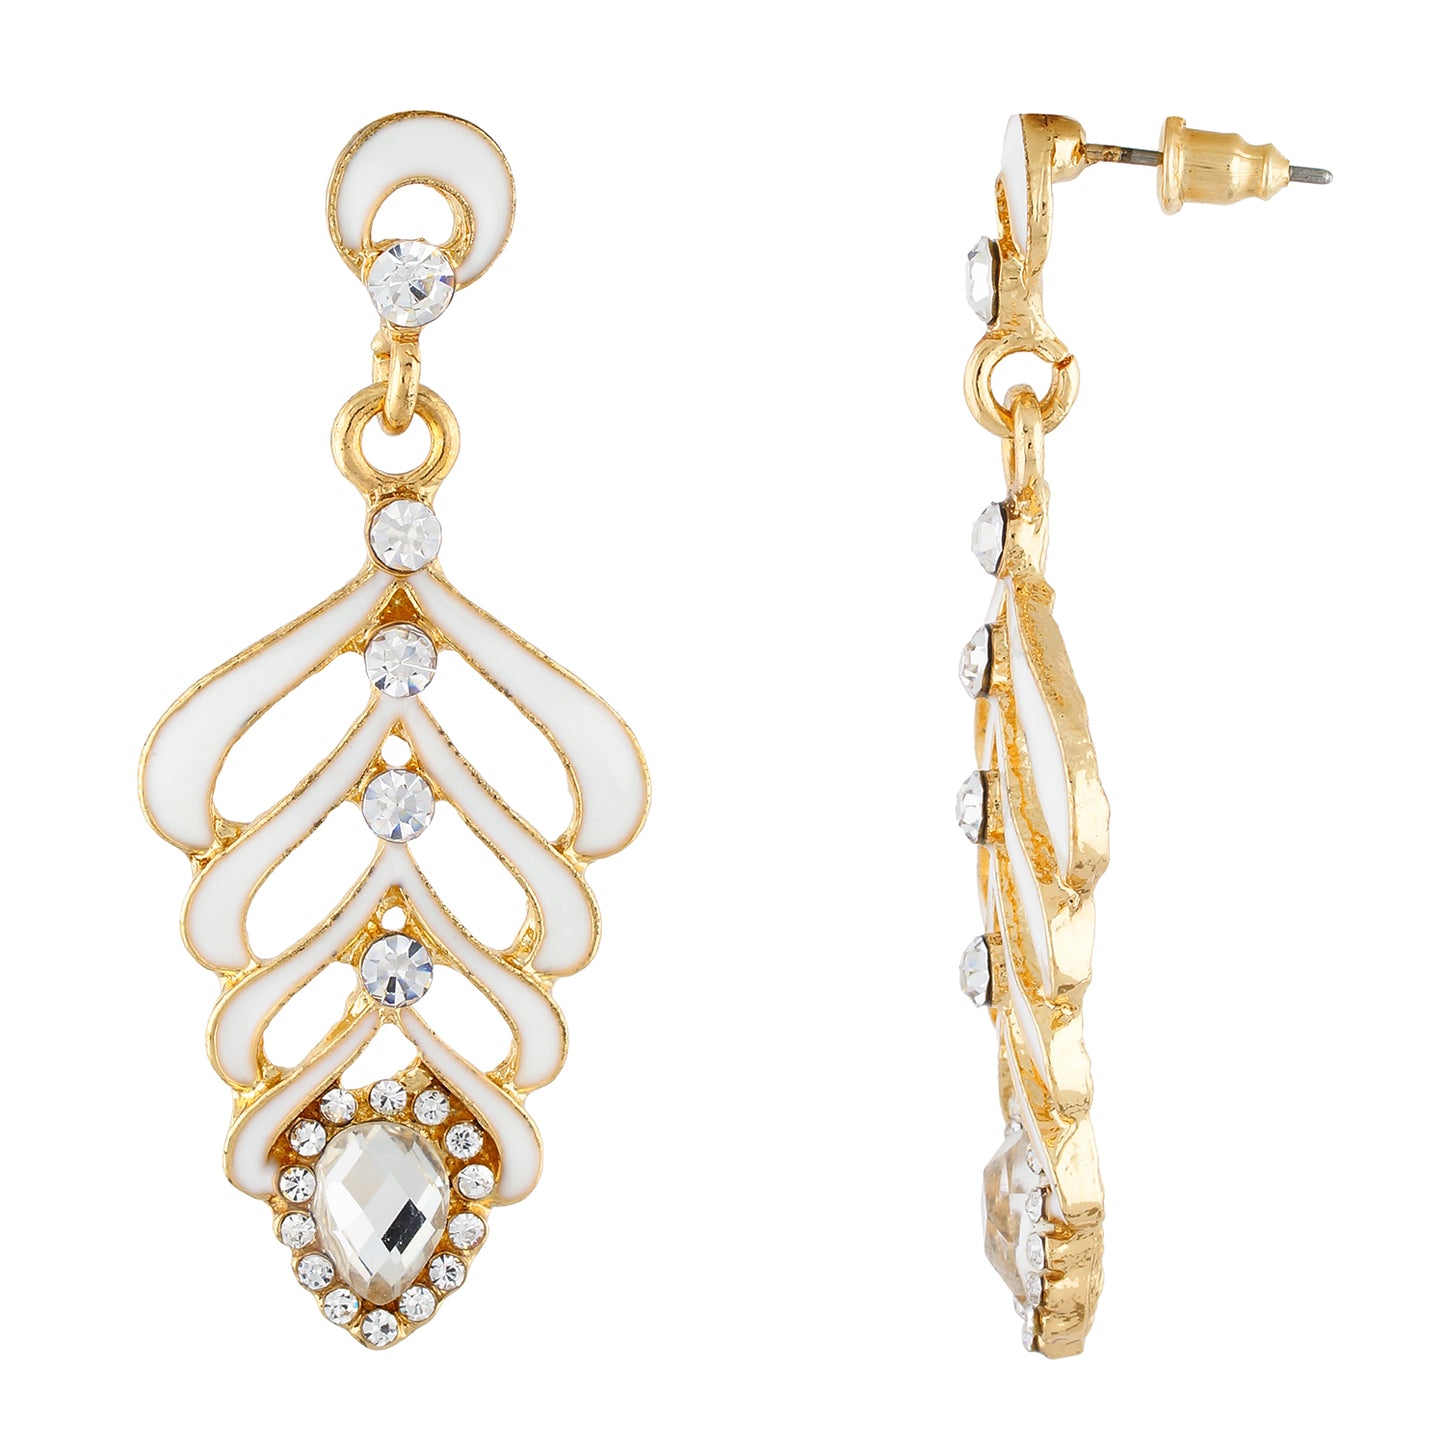 Elegant White and Gold Colour Leaf Design Enamel Enhanced Earring for Girls and Women